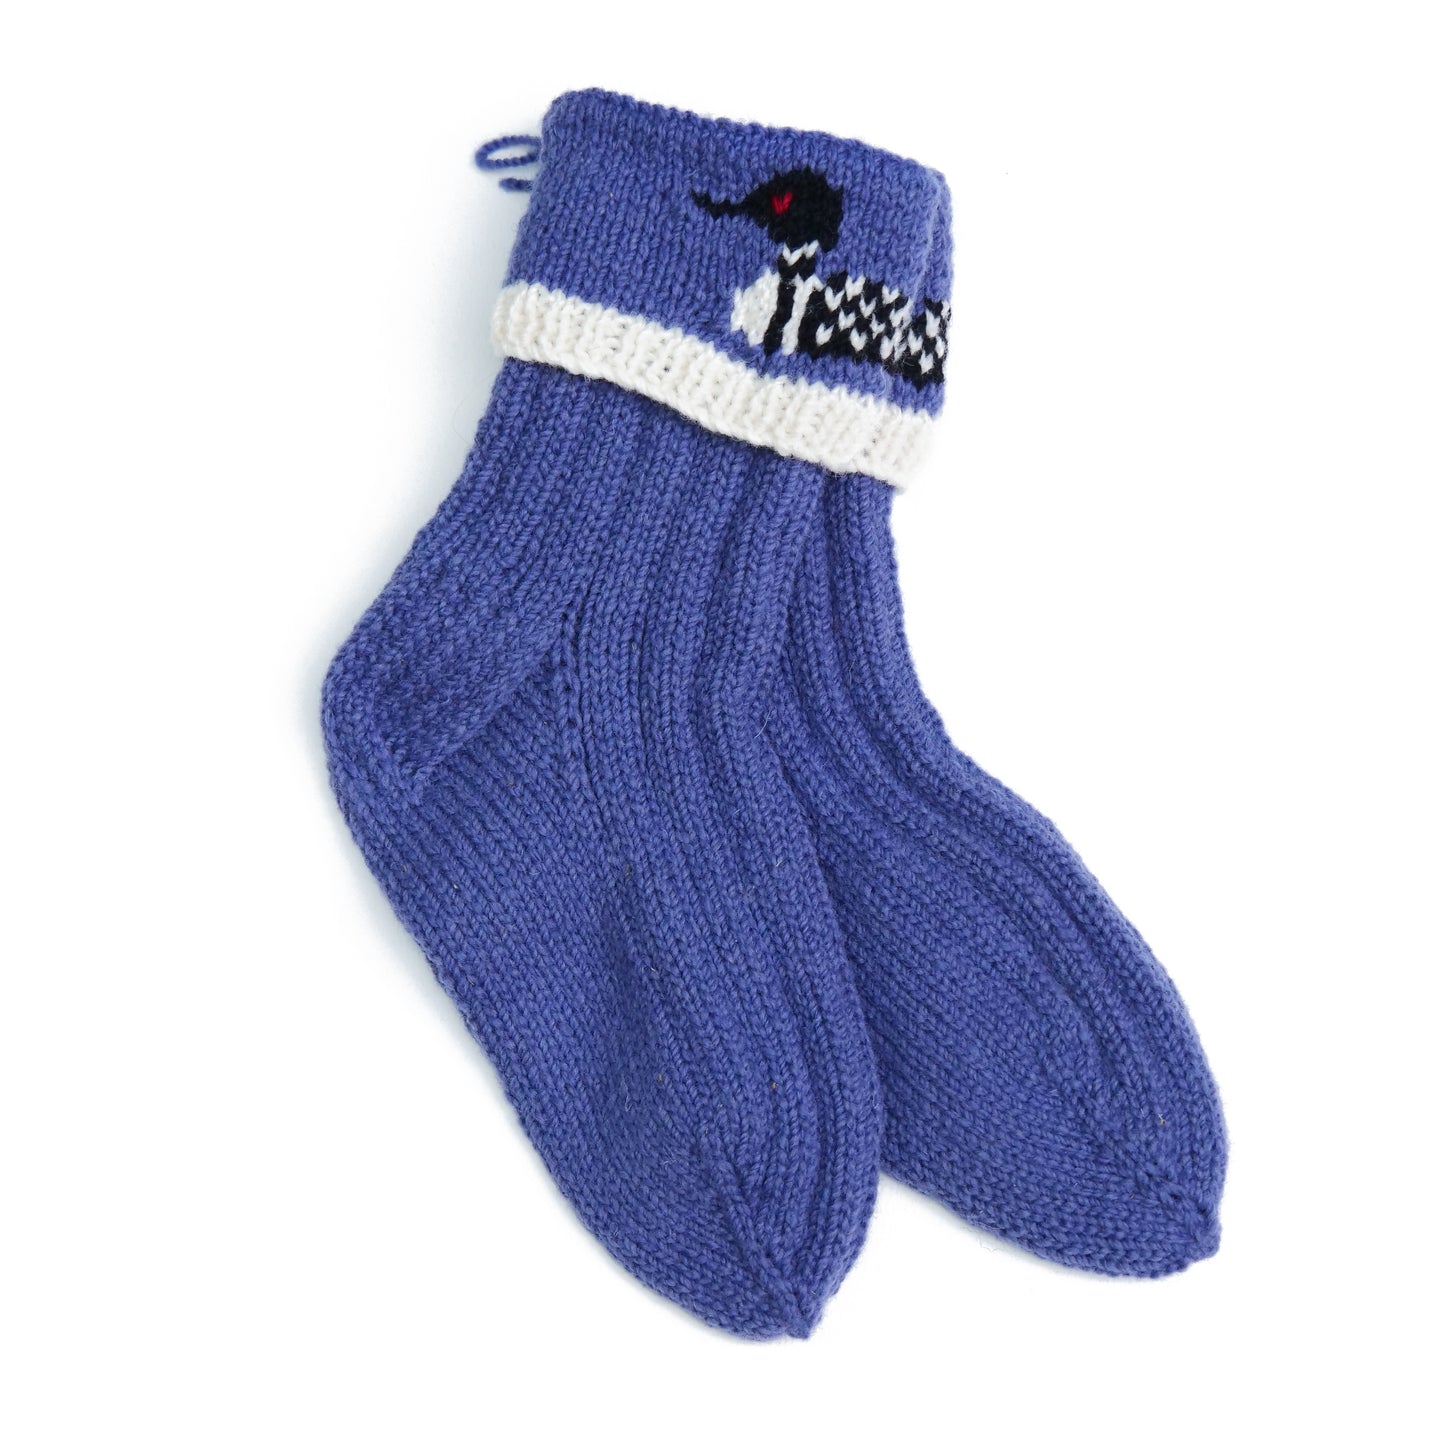 Loon Socks - Assorted Blue - Medium